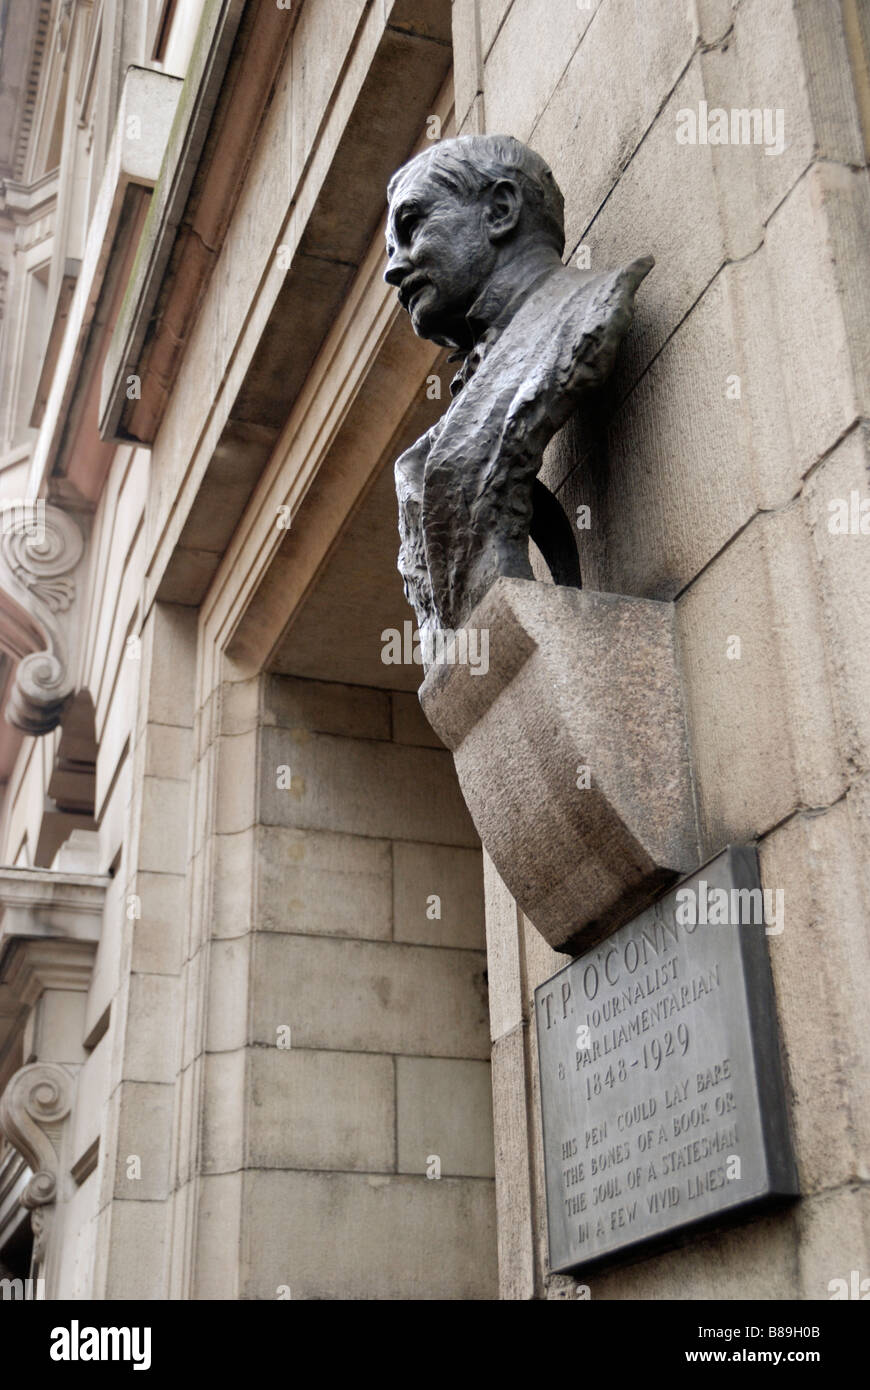 Busto de bronce para conmemorar el parlamentario y periodista T P O'Connor en The Strand Londres Foto de stock